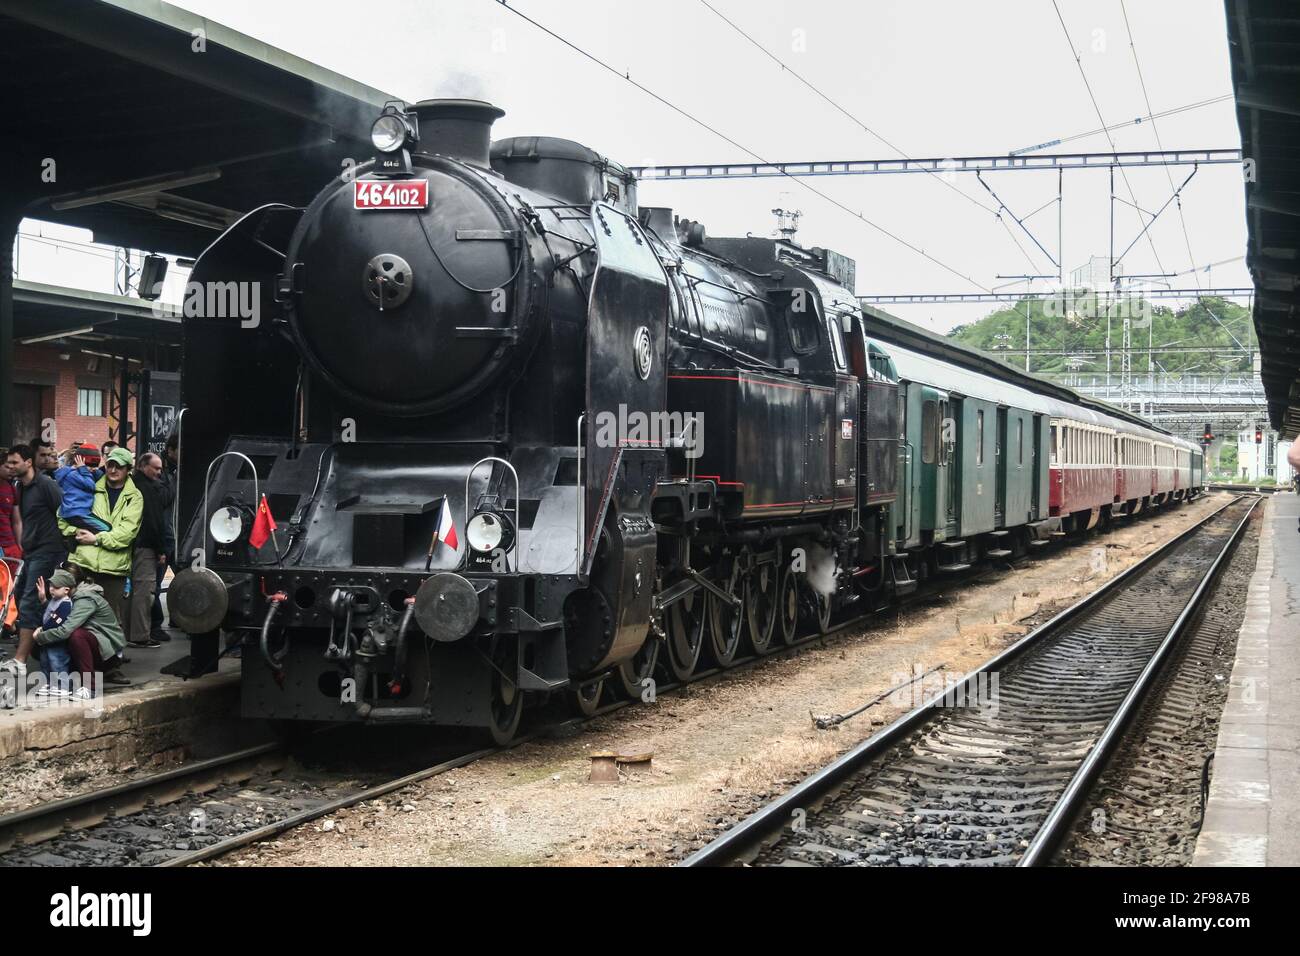 KURIM, TSCHECHIEN - 10. MAI 2014: Dampflokomotive, die einen historischen Zug zieht, eine ehemalige tschechoslowakische Eisenbahn (CSD) besteht während einer historischen Probe von Stockfoto